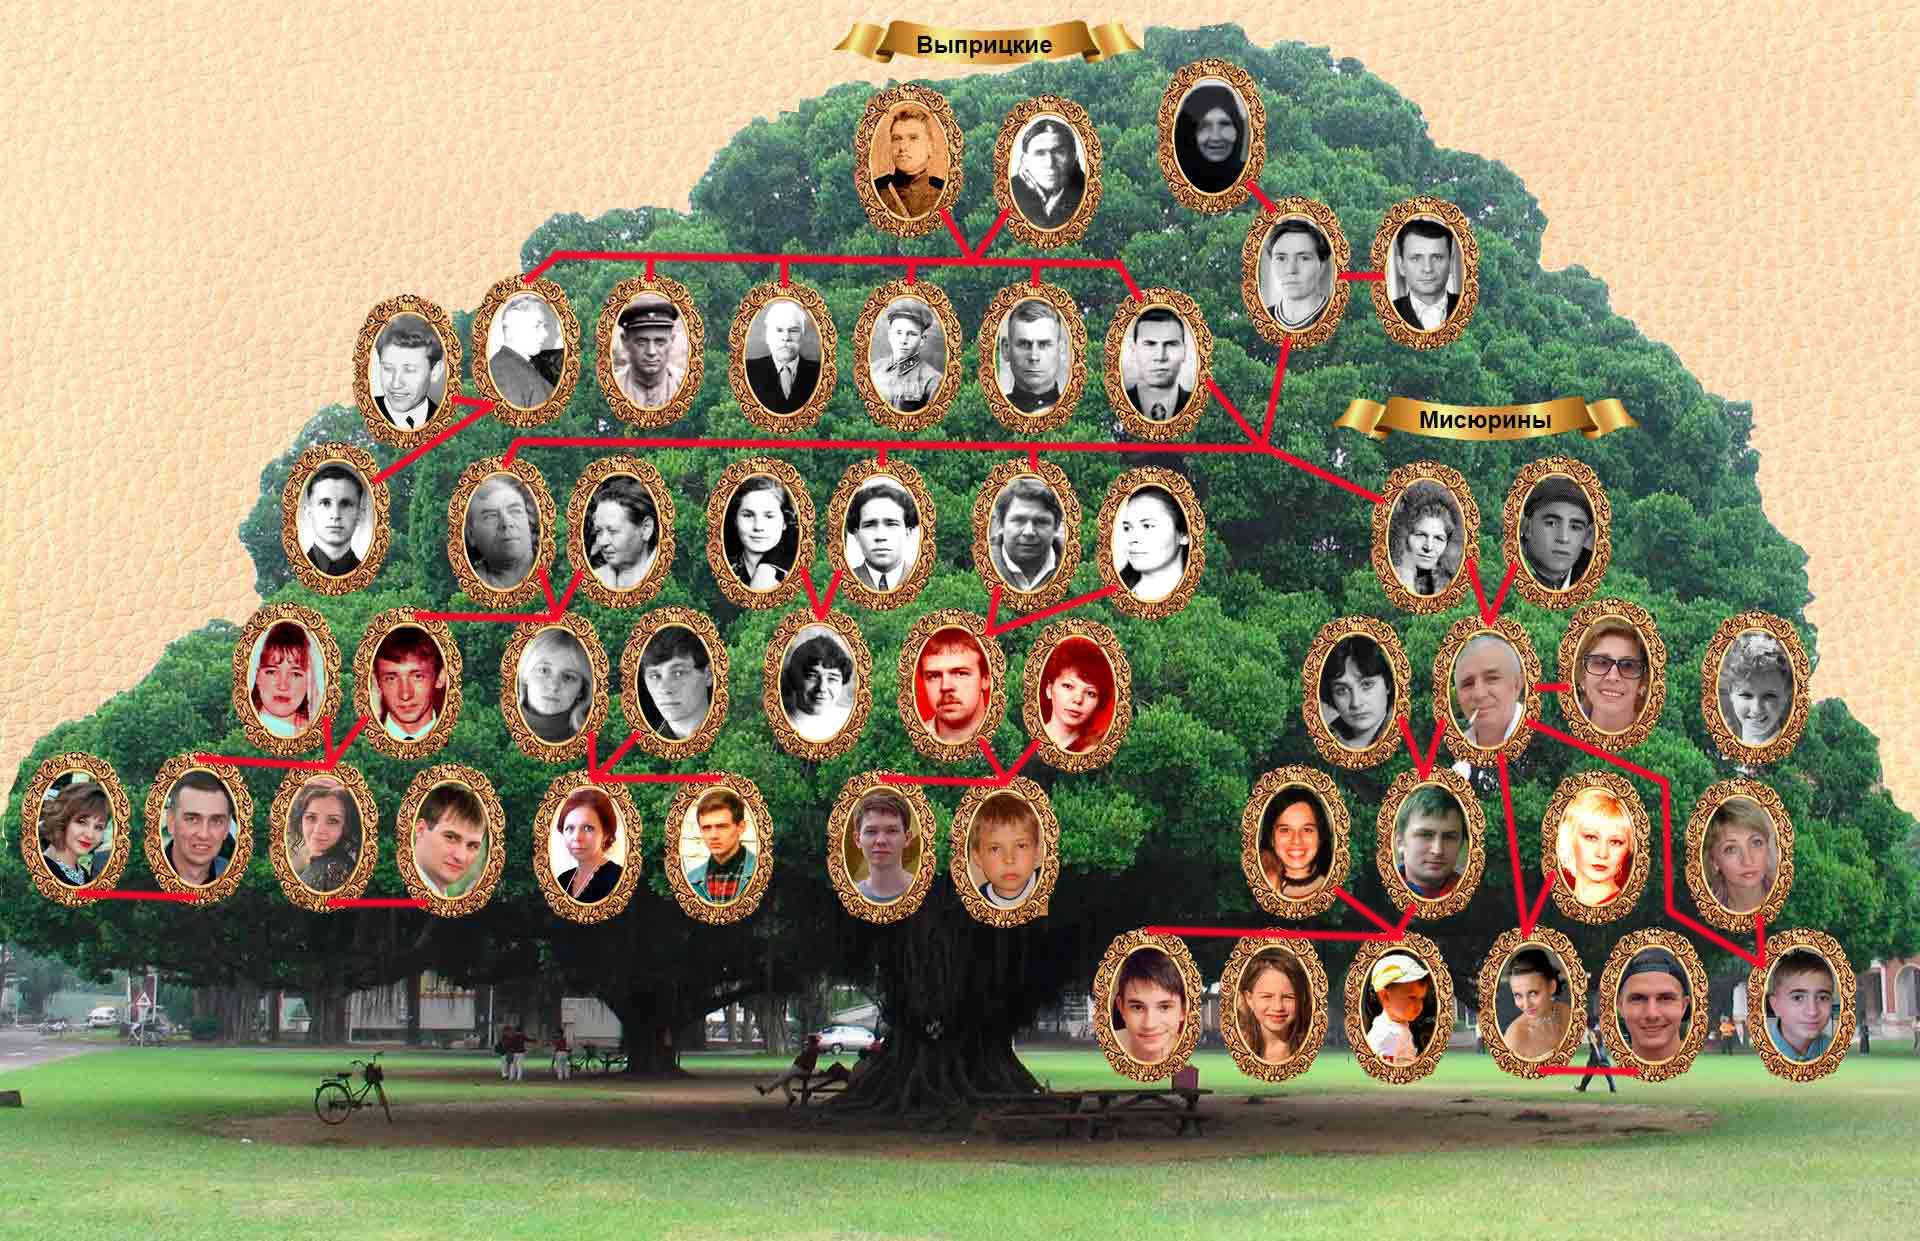 Картинка дерева для родословной без фото и подписи